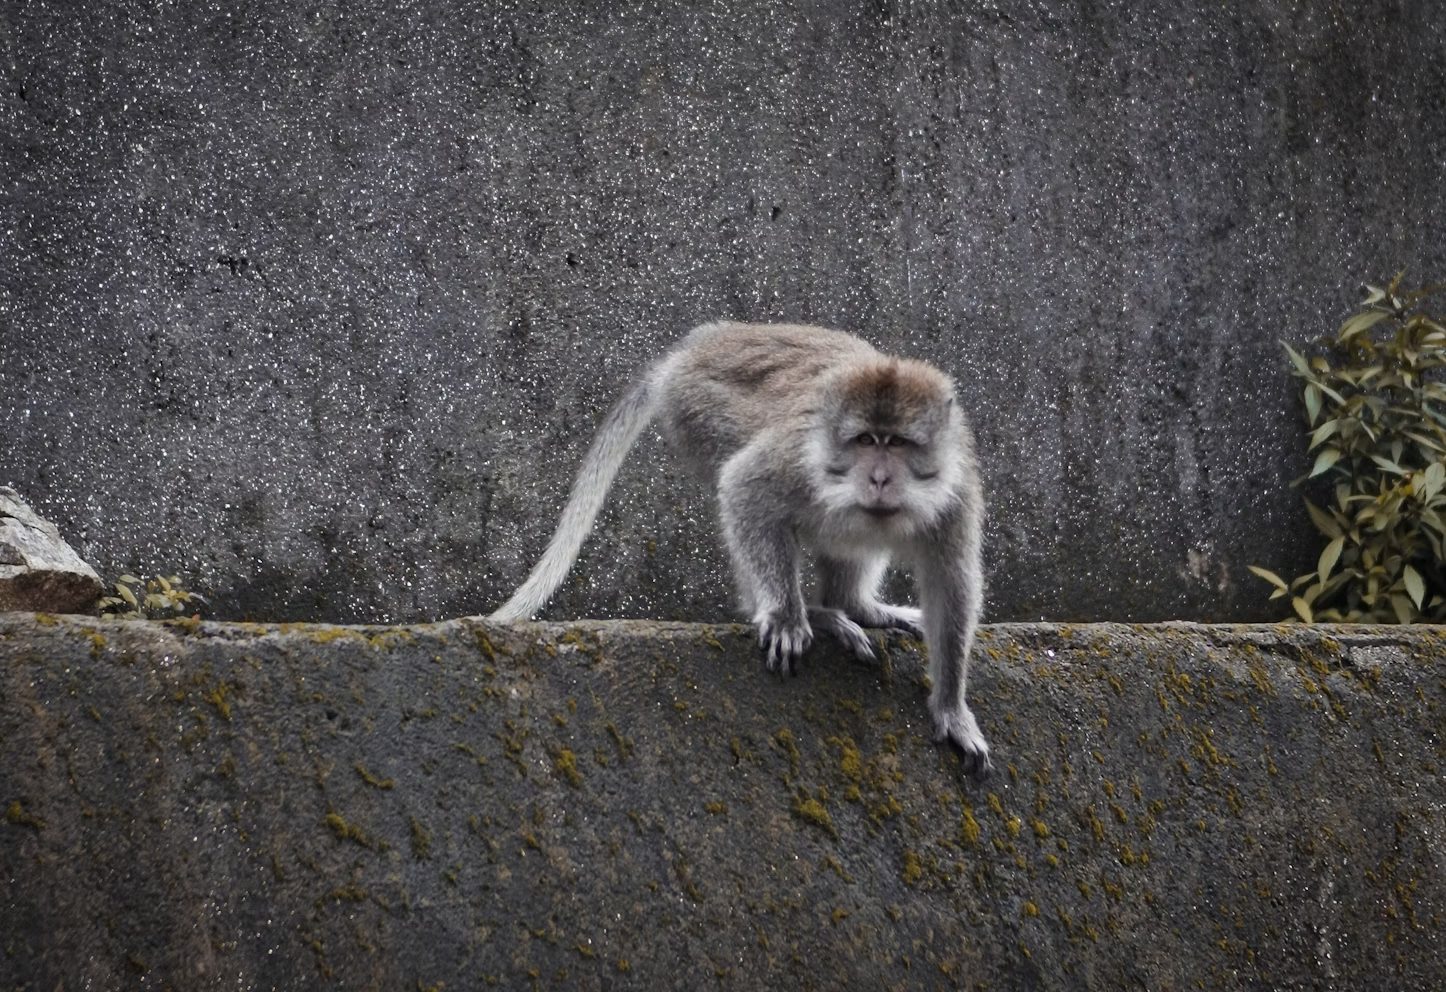 Ketika Paspor Seorang Turis di Bali, Dirusak Monyet!